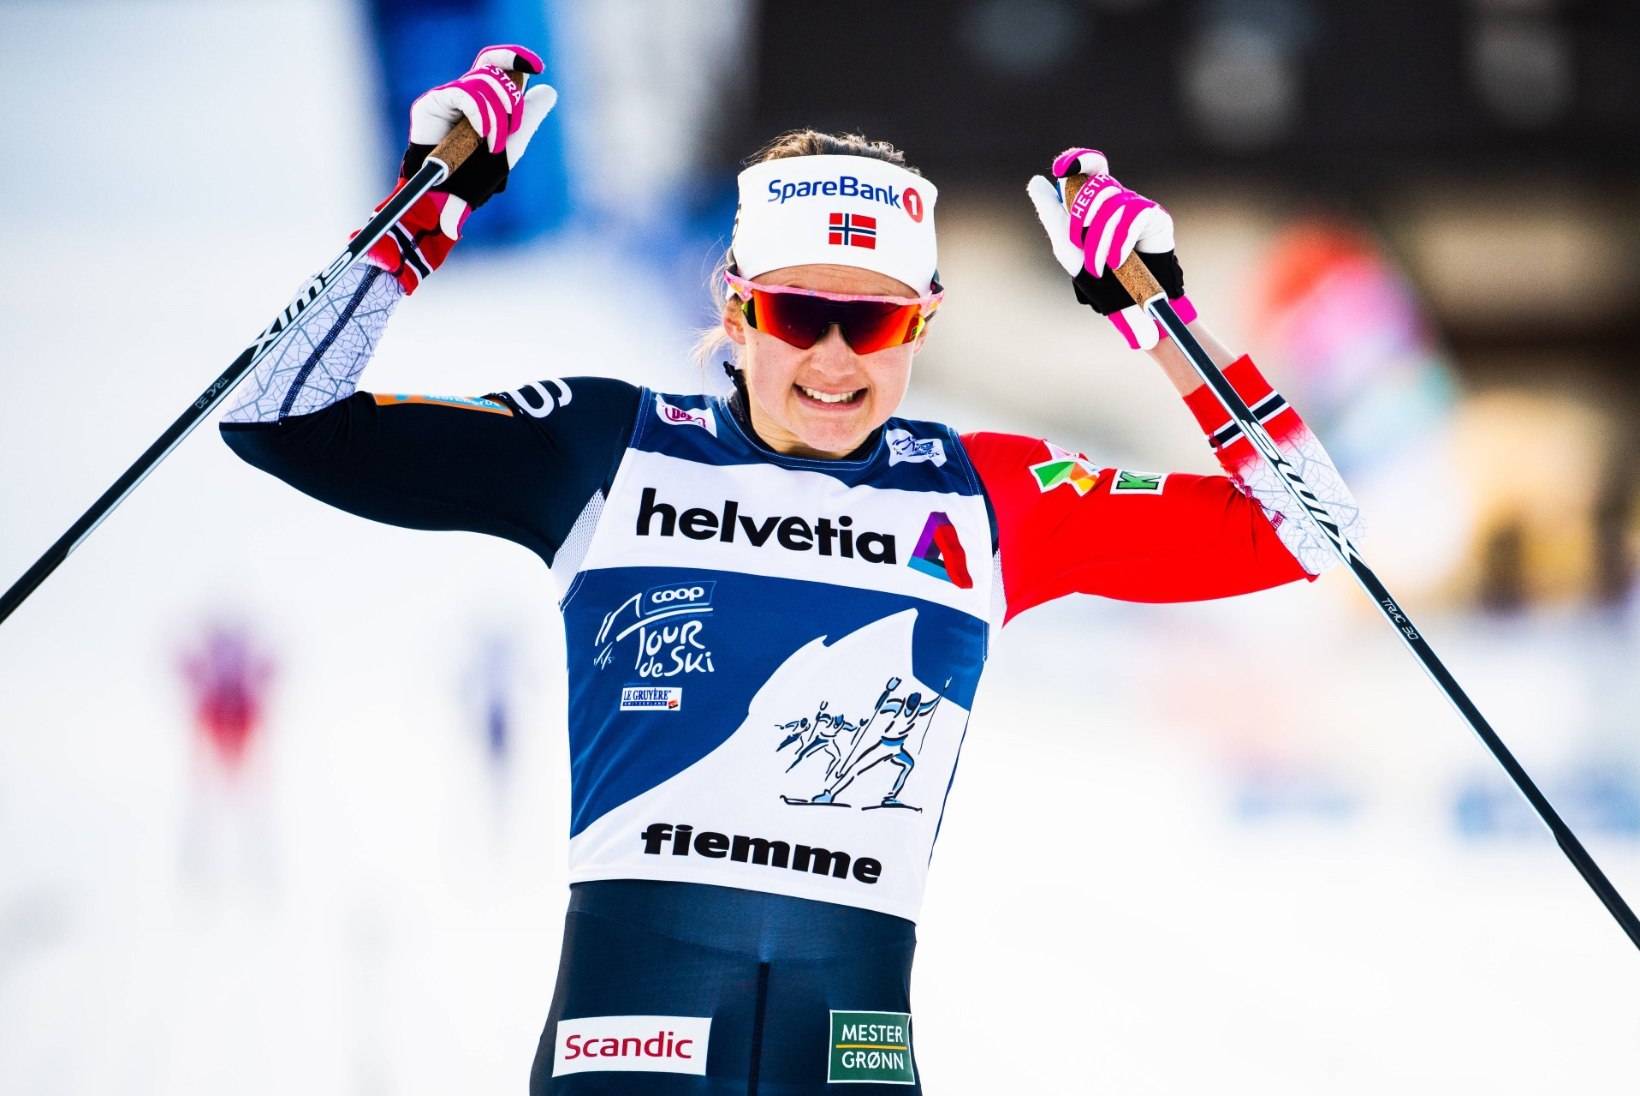 Tour de Ski võitnud Östberg näitas viimasel etapil jõudu